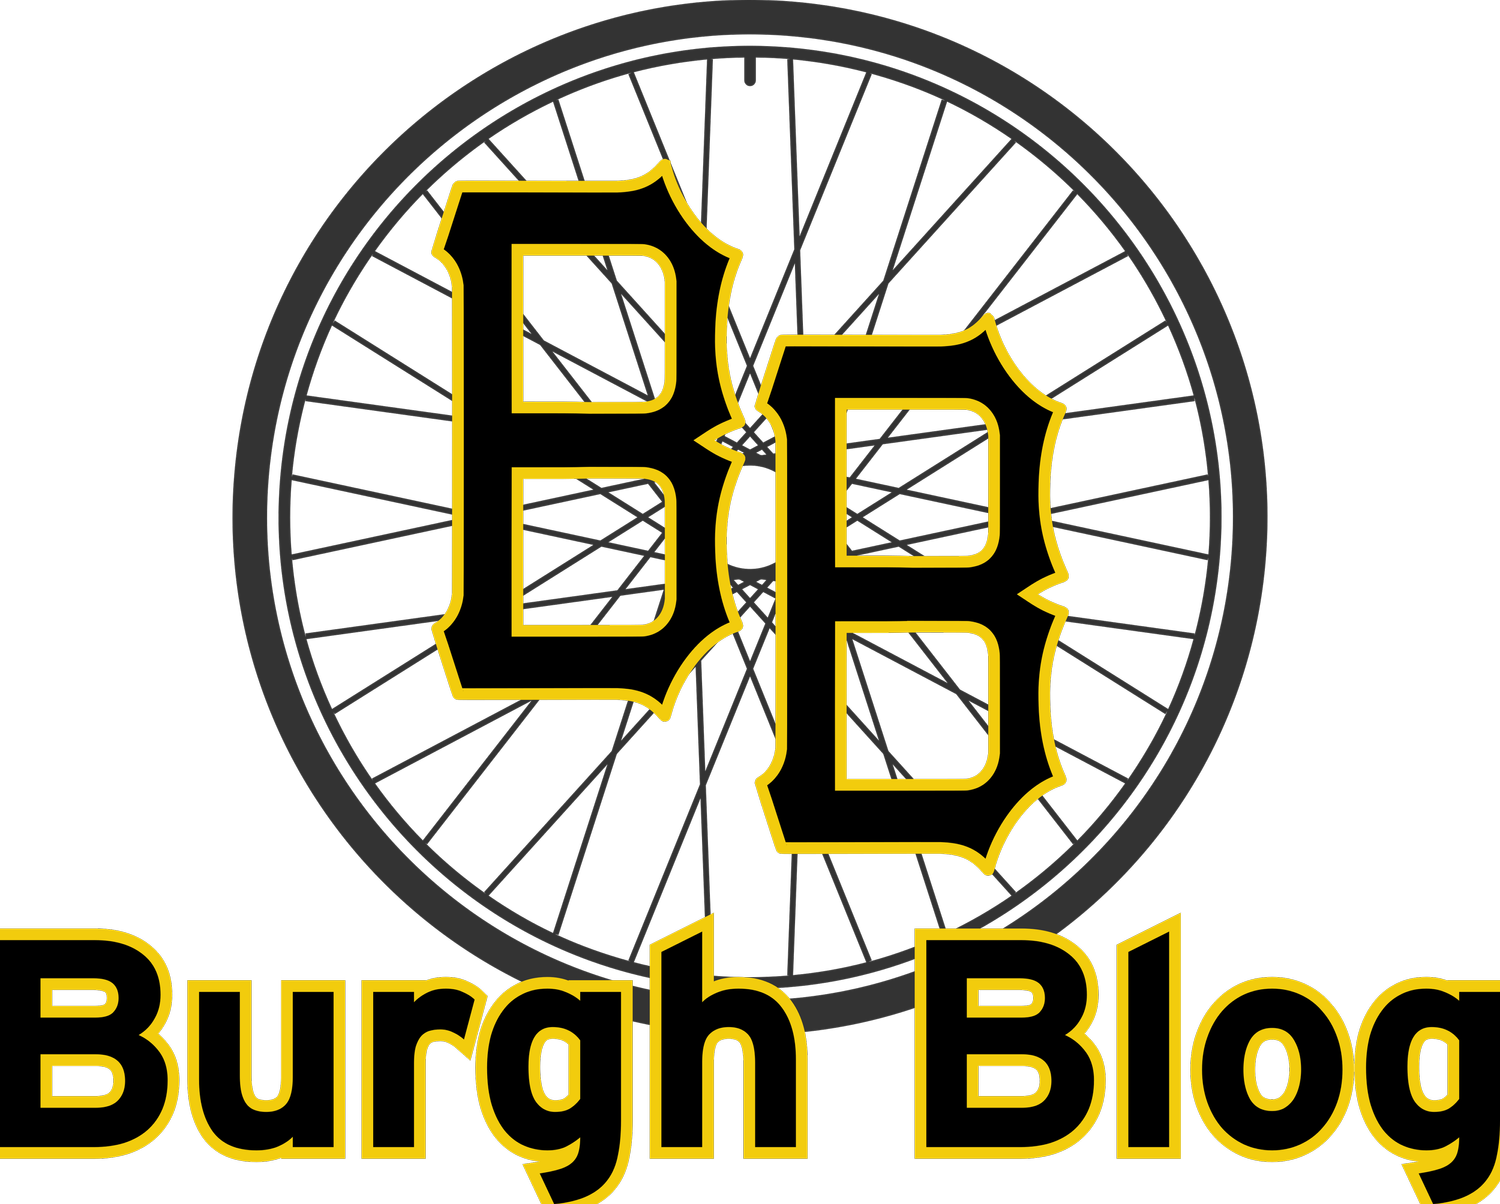 Burgh Blog